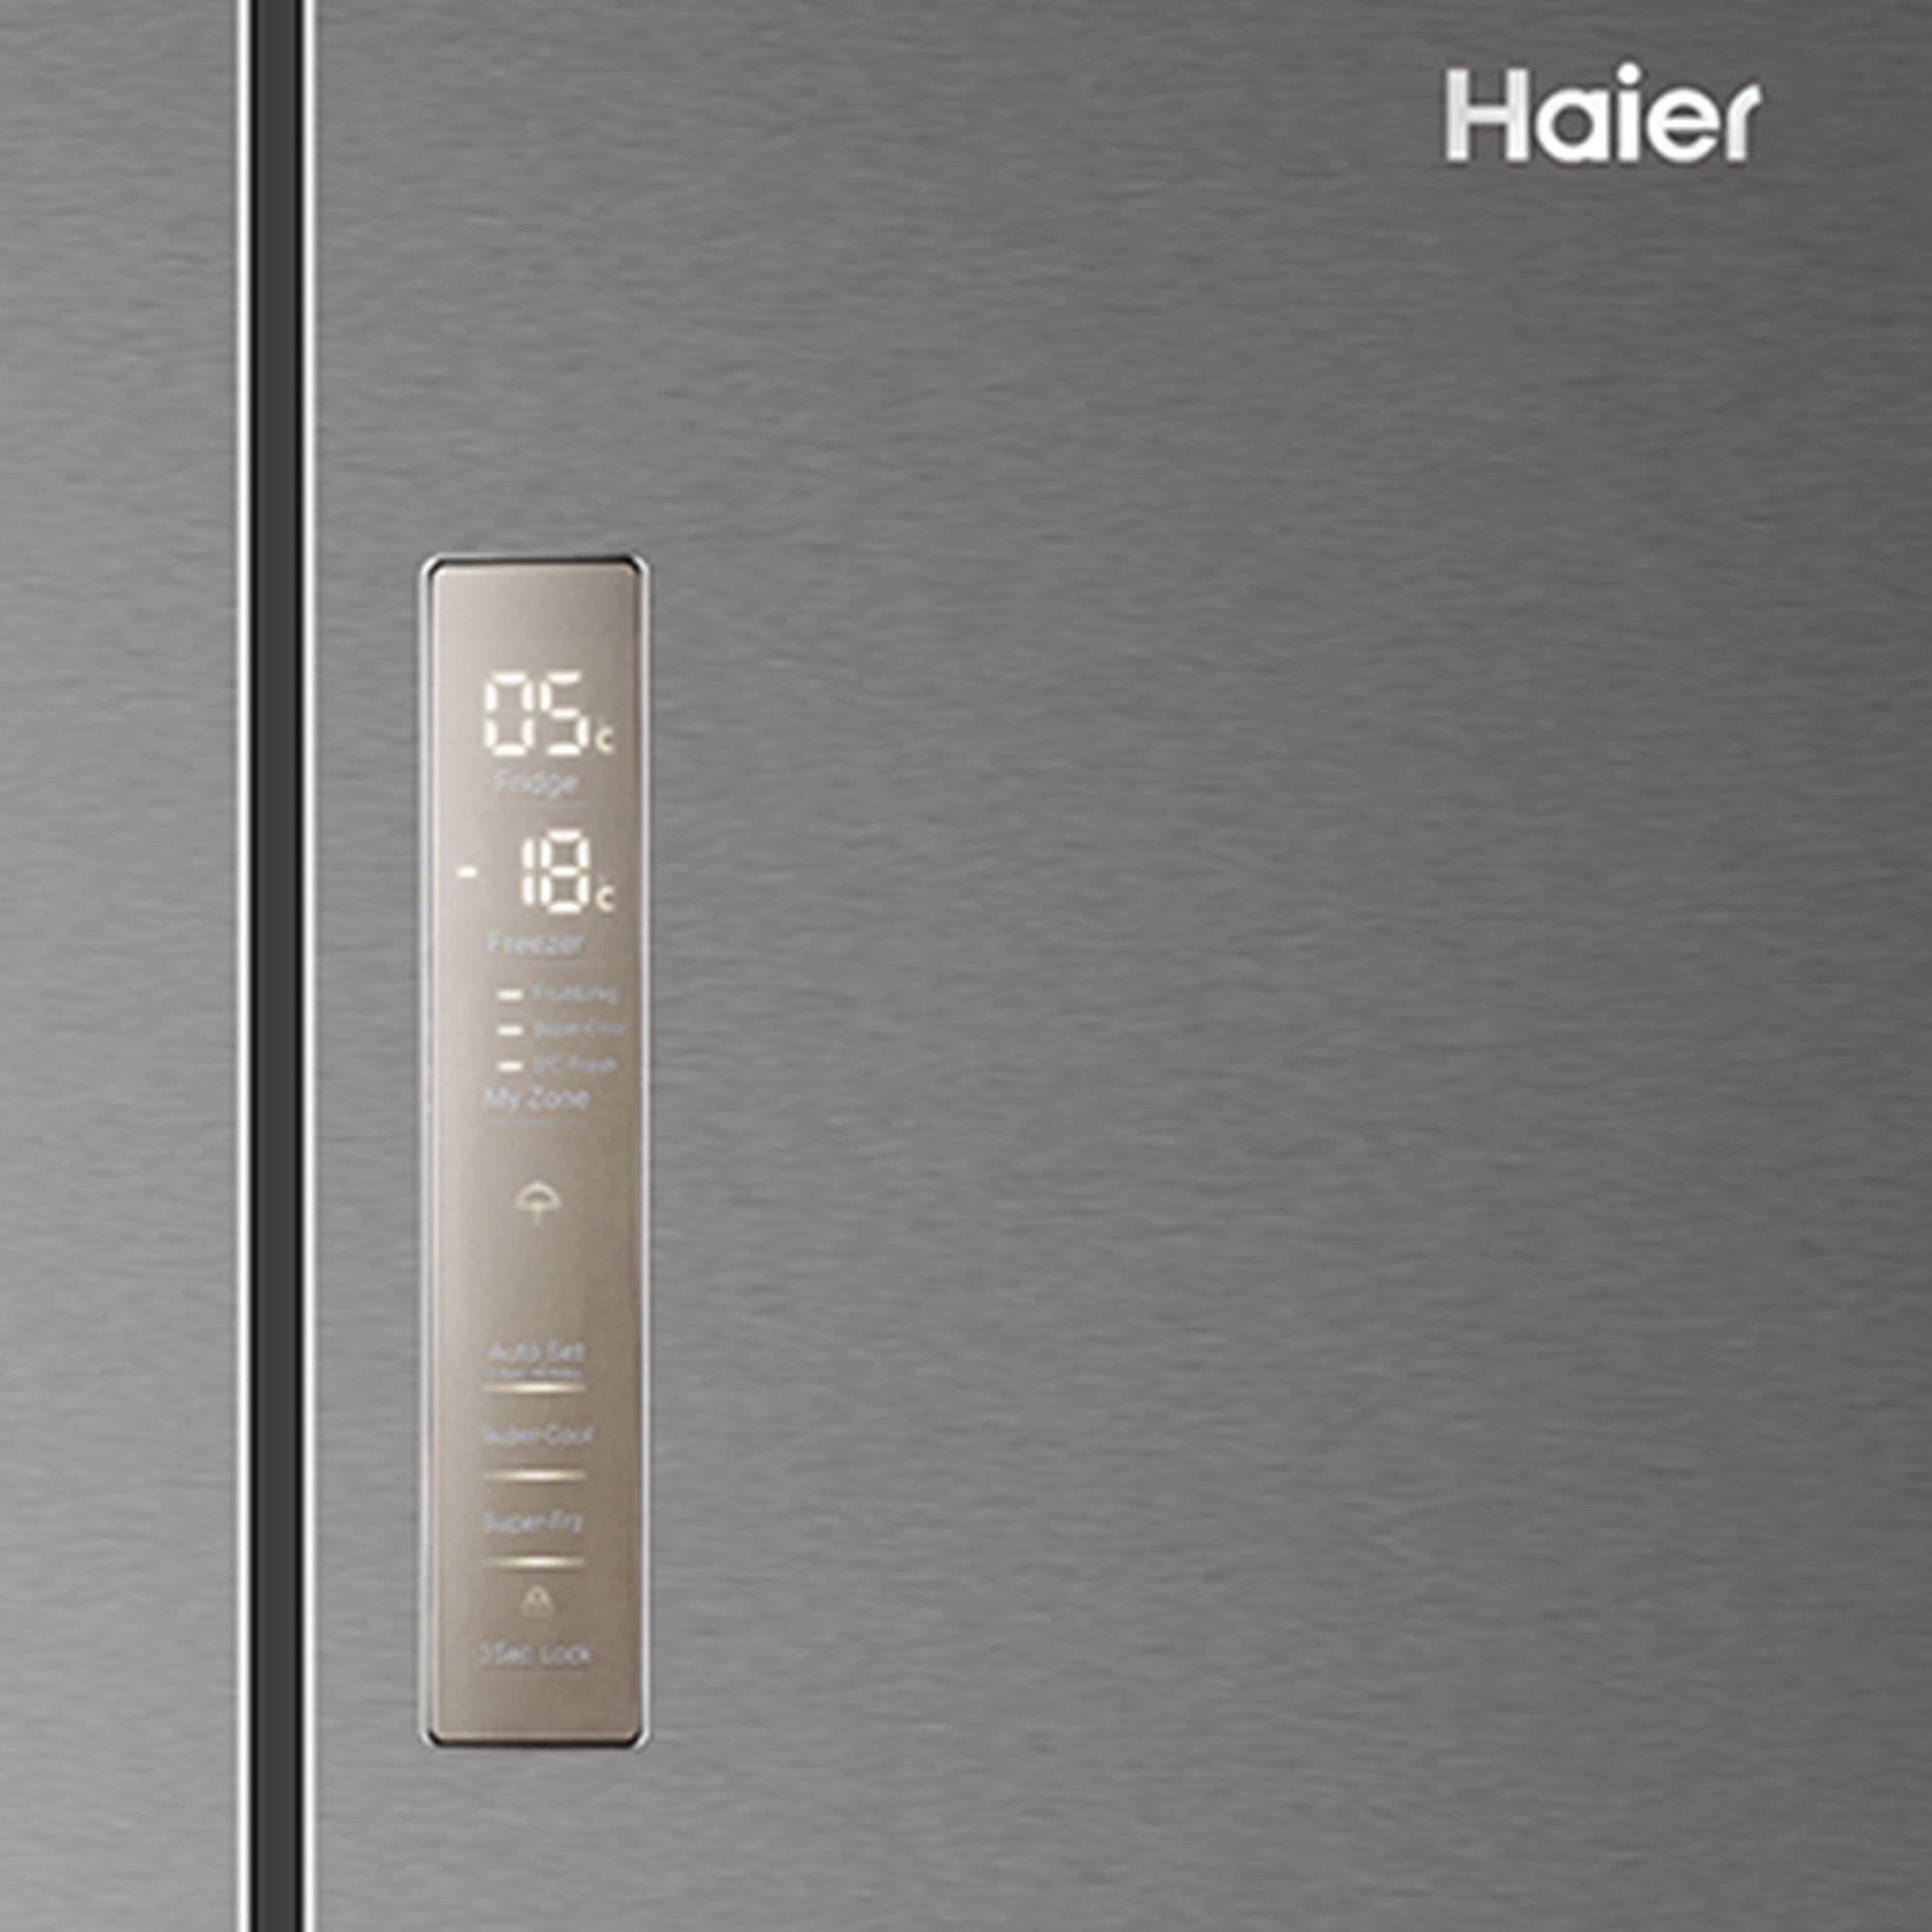 Haier Kühlschrank silber HB17FPAAA, 190 cm hoch, 70 cm breit, MyZone Fach:  0 Grad Zone, Frischezone, Defrost, Quick Cool.